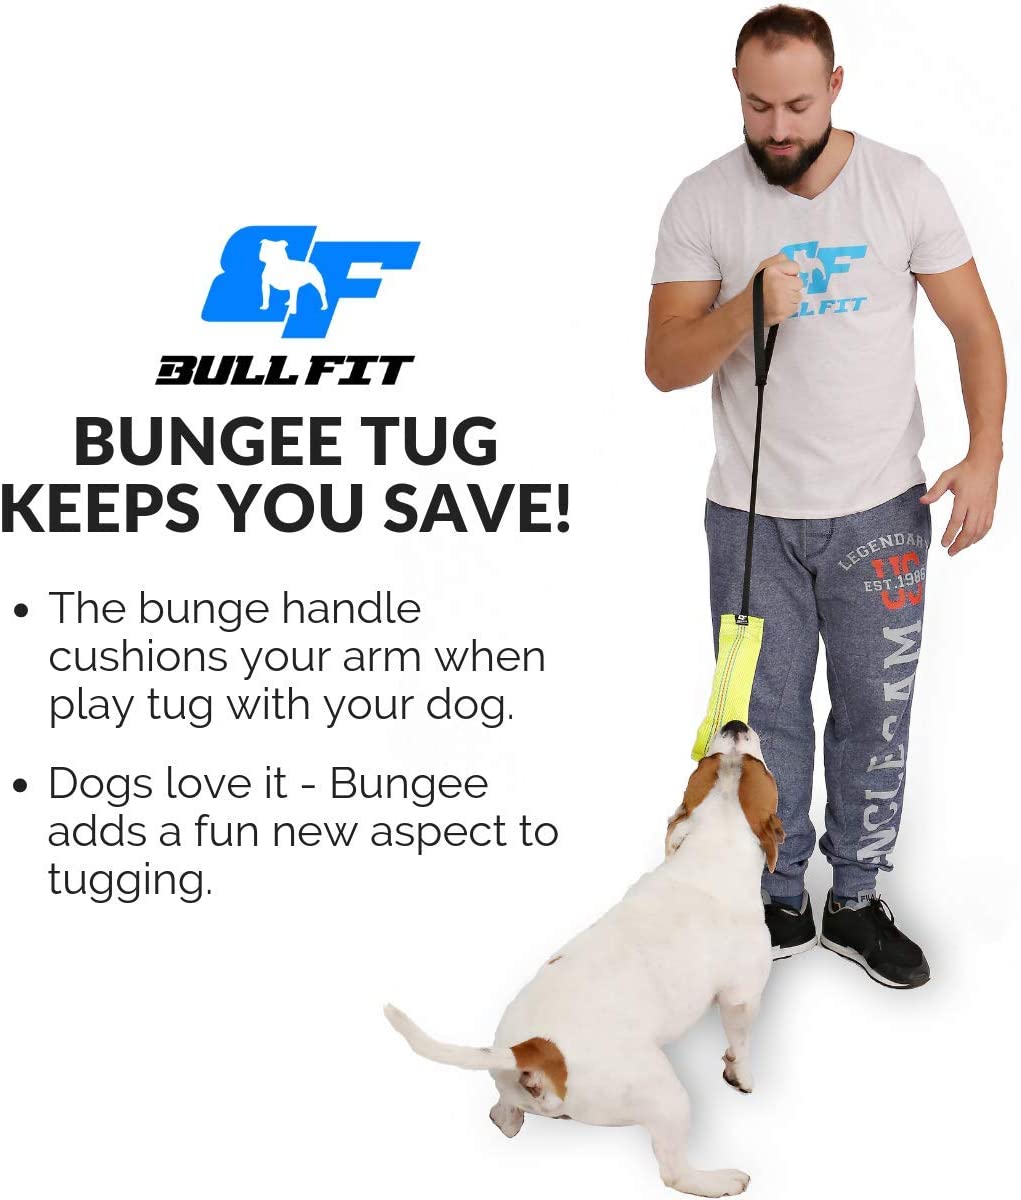  Bull Fit bungee mordedor perro, 25 cm - Embutido de manguera, K9 dummy y motivador canino resistente y duradero - juguetes para perros de entrenamiento 